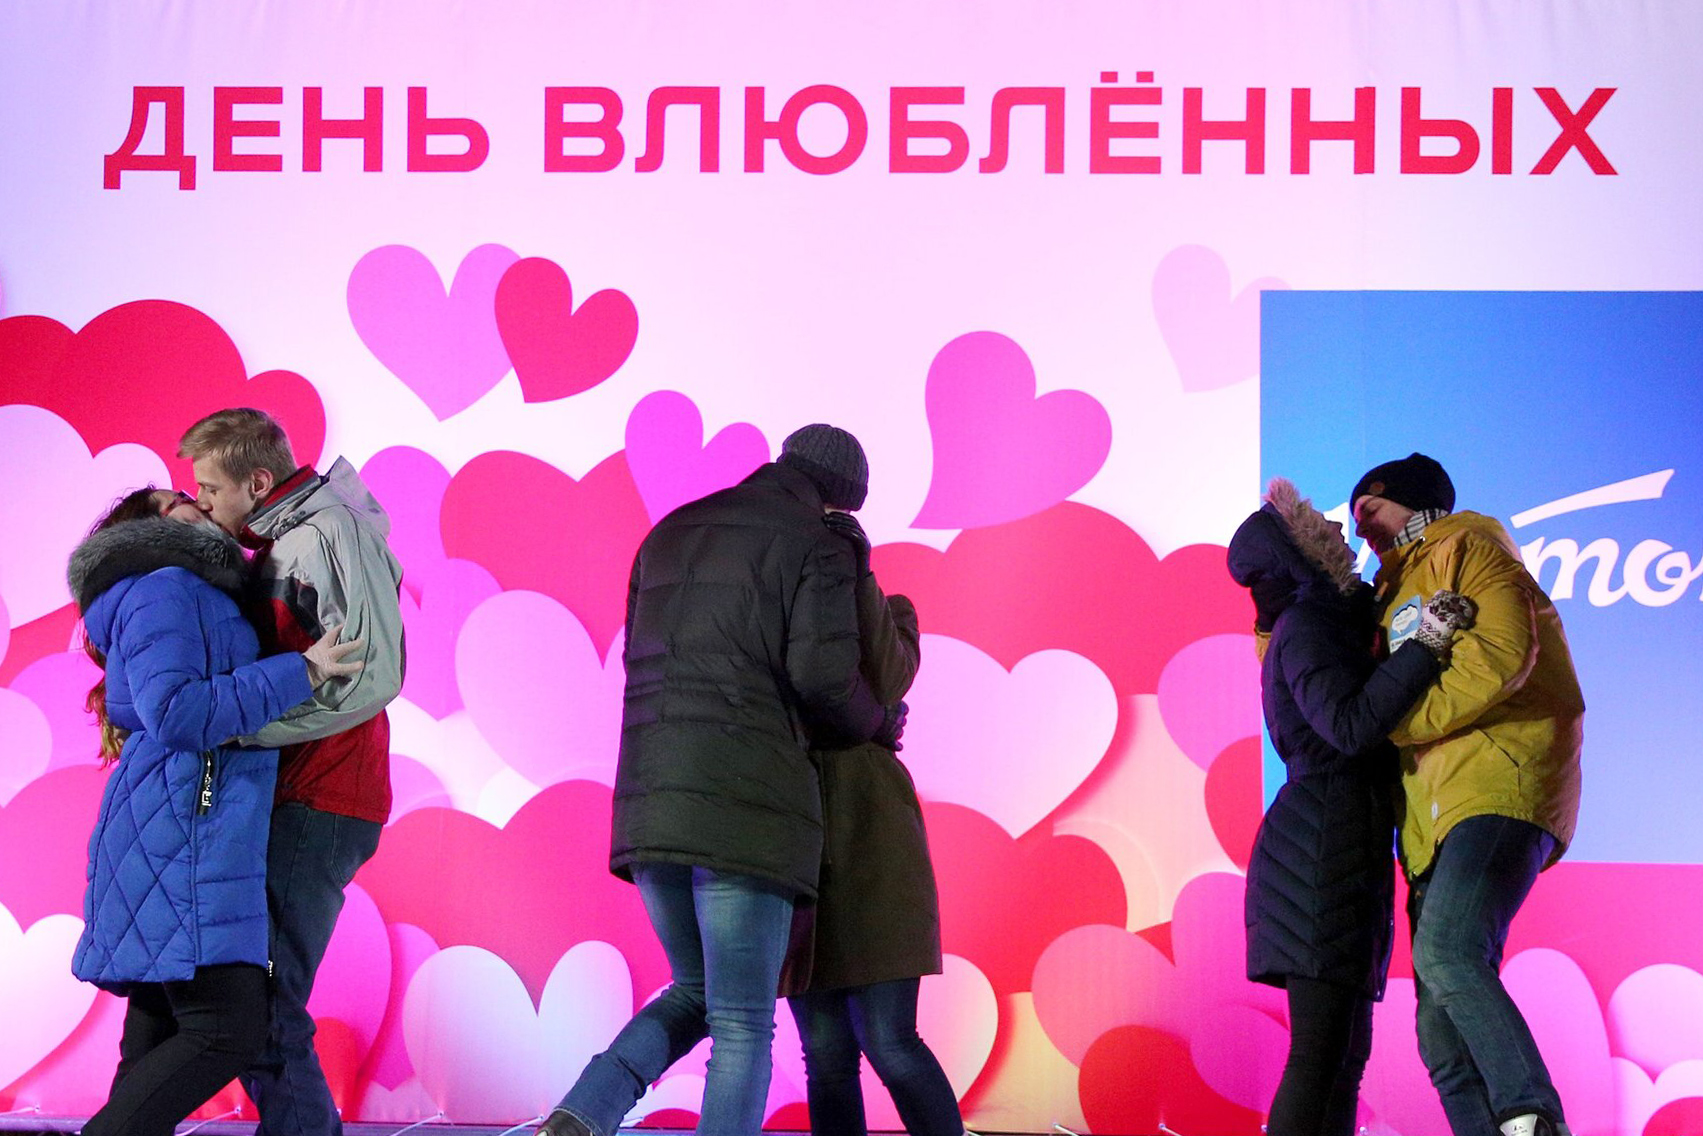 Какой сегодня праздник в россии 14 февраля. С днем влюбленных. 14 Февраля праздник. С днём всех влюблённых. Российский день влюбленных.